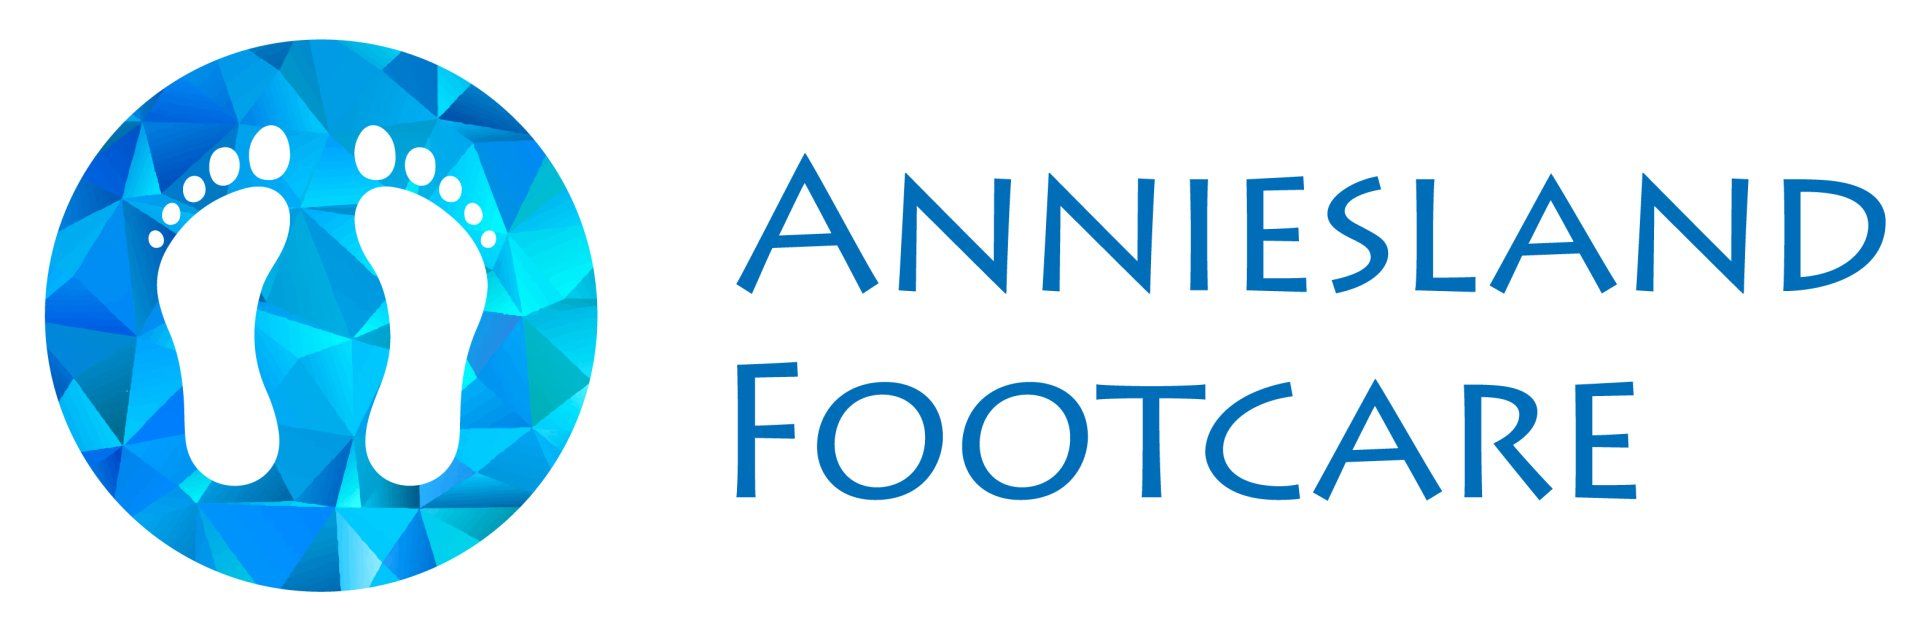 Anniesland Footcare logo